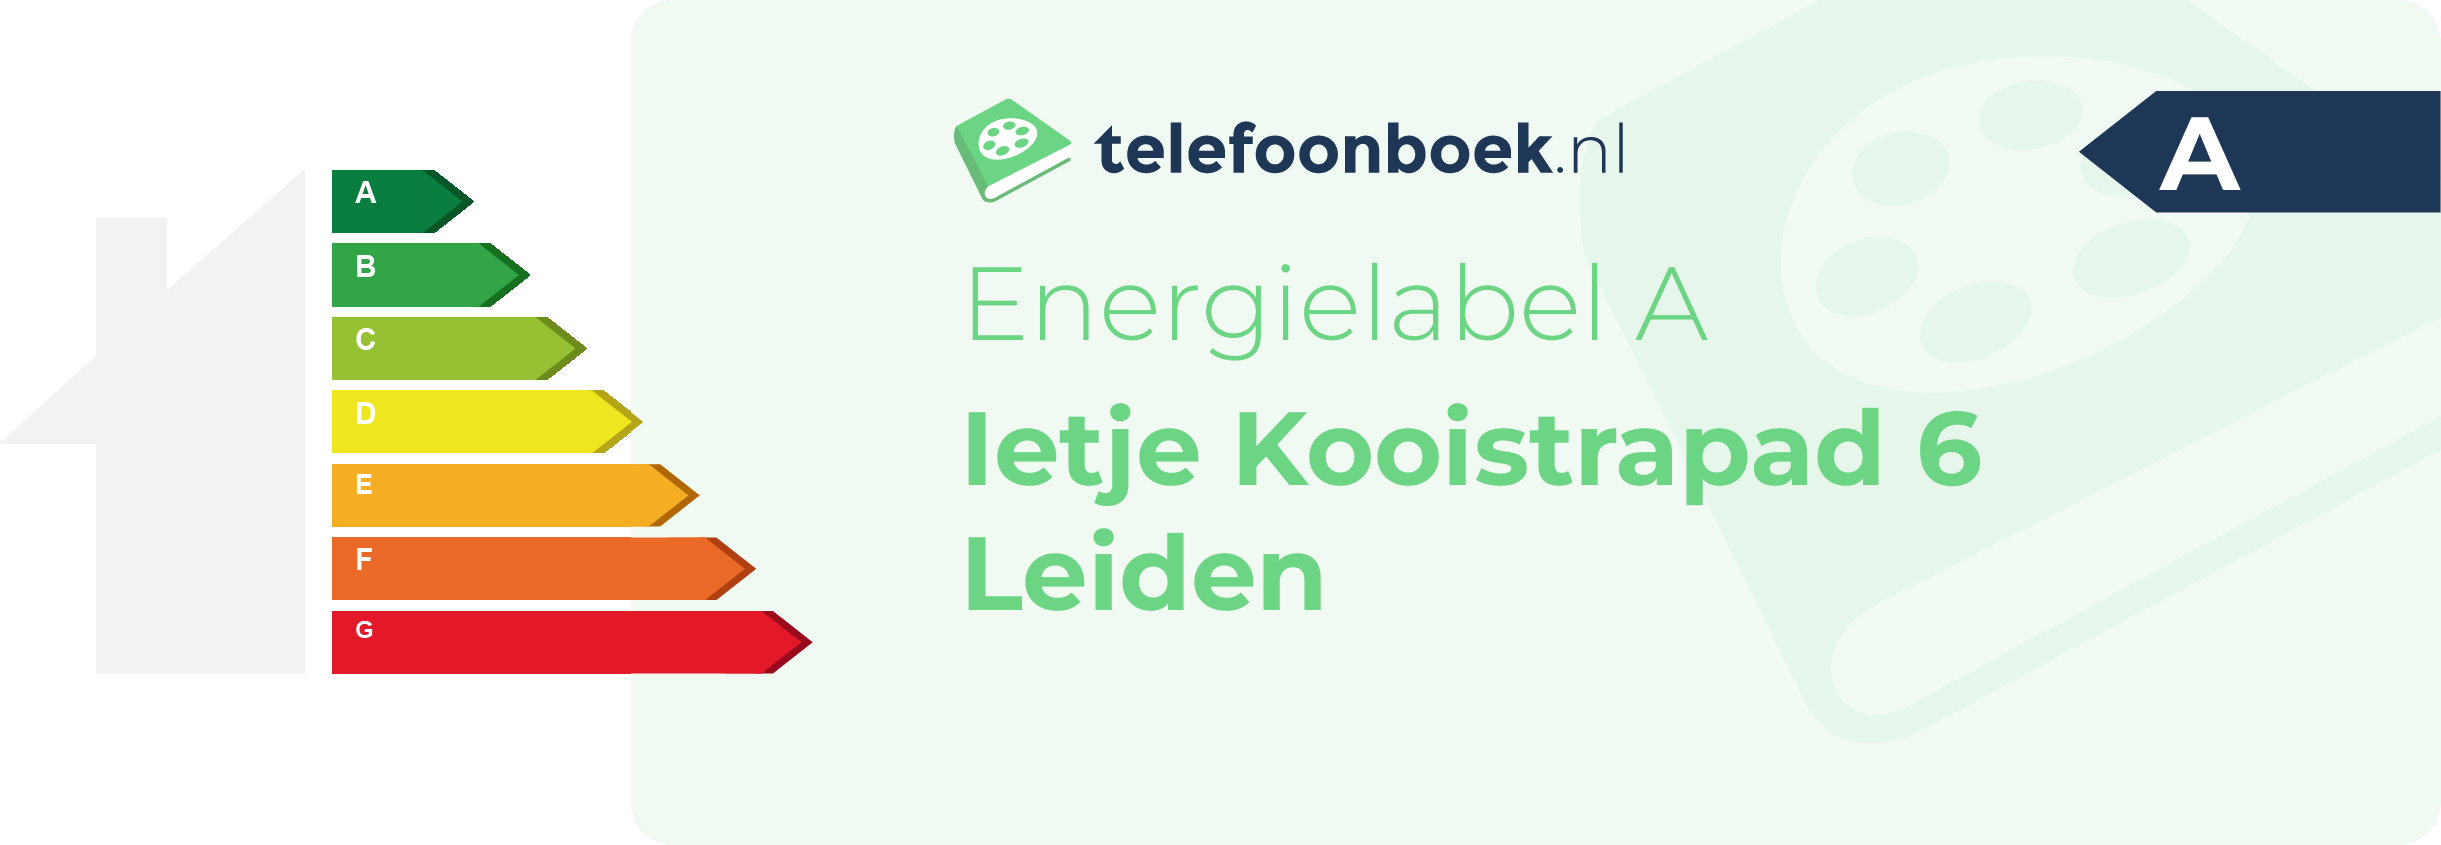 Energielabel Ietje Kooistrapad 6 Leiden